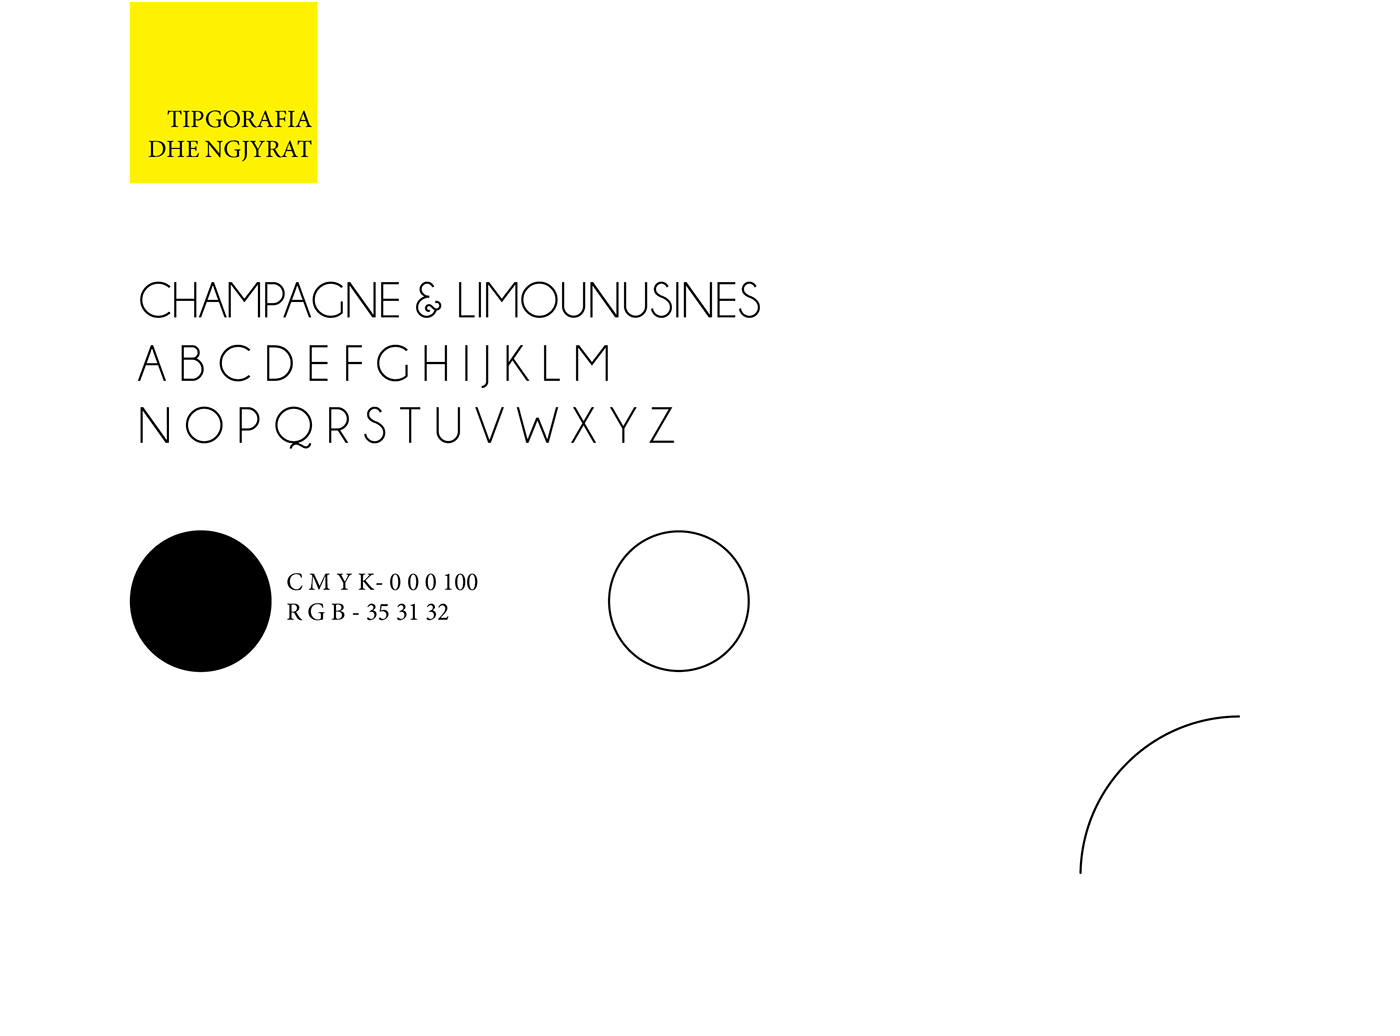 architecture Interior design logo brand identity Albania kosovo company